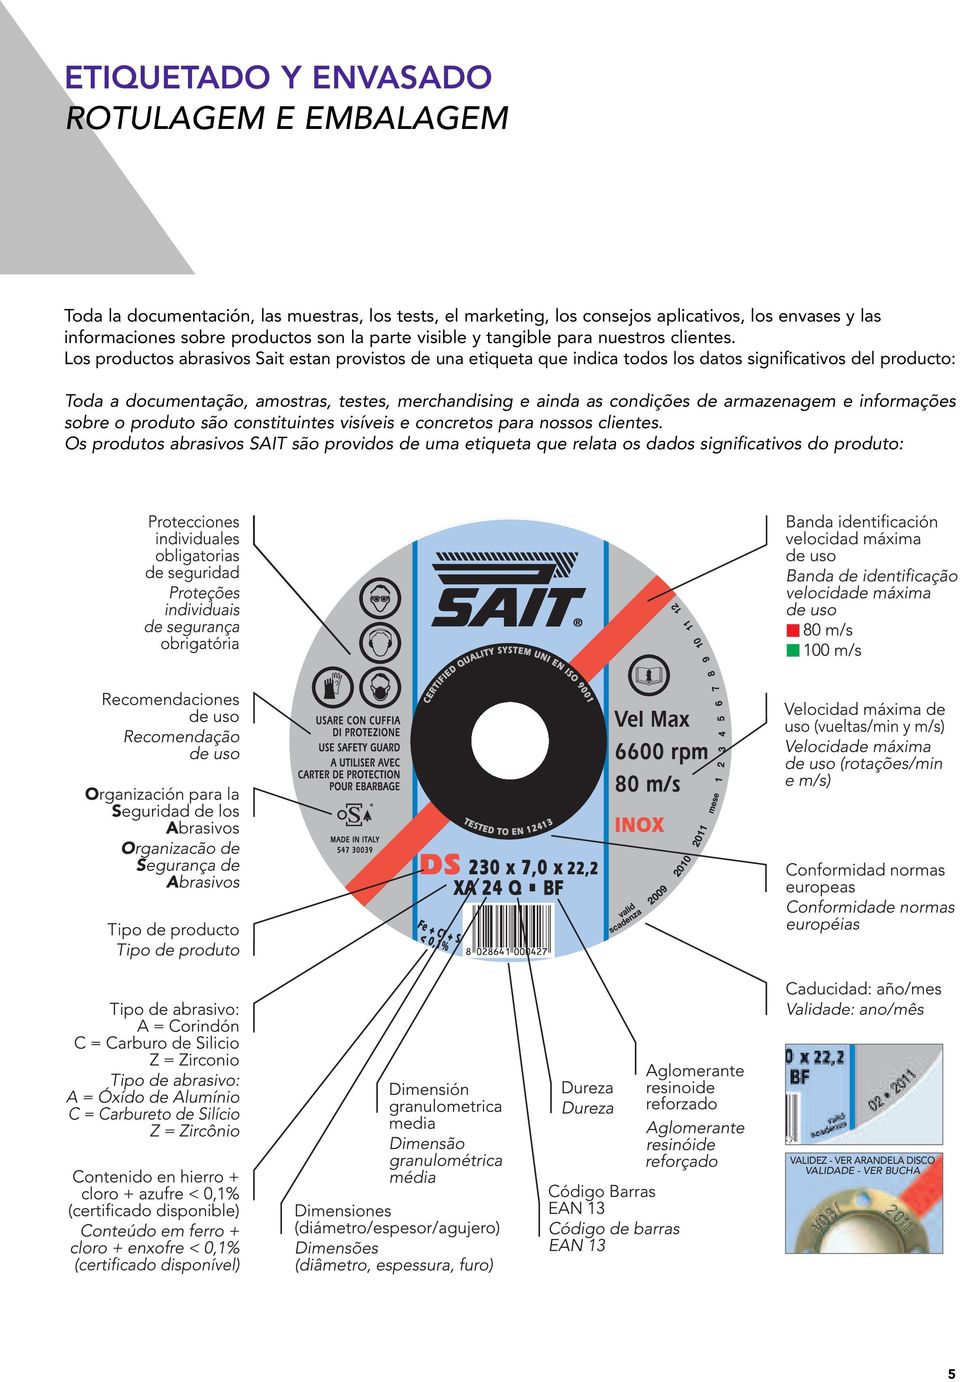 Los productos abrasivos Sait estan provistos de una etiqueta que indica todos los datos significativos del producto: Toda a documentação, amostras, testes, merchandising e